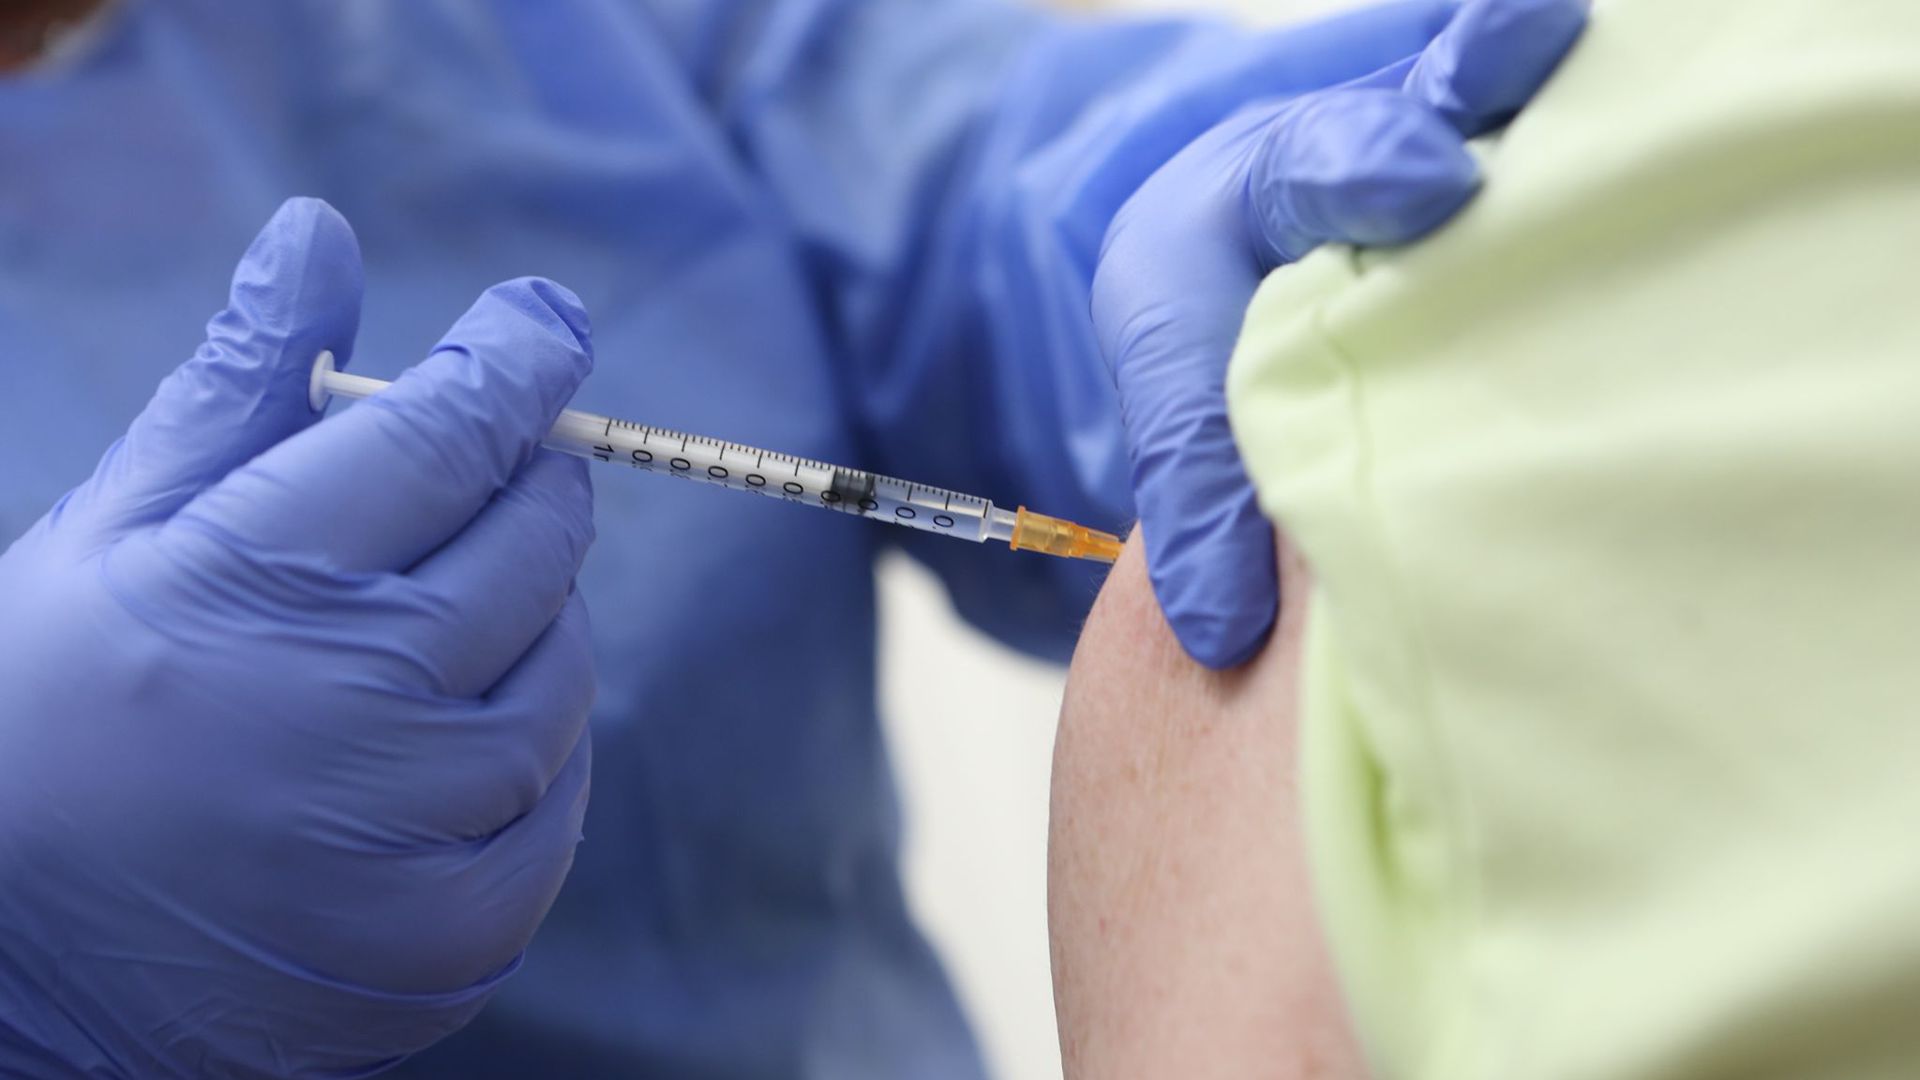 Sollte die Impf-Reihenfolge aufgehoben werden? Vom Stiko-Chef kommt dazu ein klares: Nein. Die aktuellen Intensivzahlen zeigten, dass es sinnvoll sei, Ältere zuerst zu schützen.